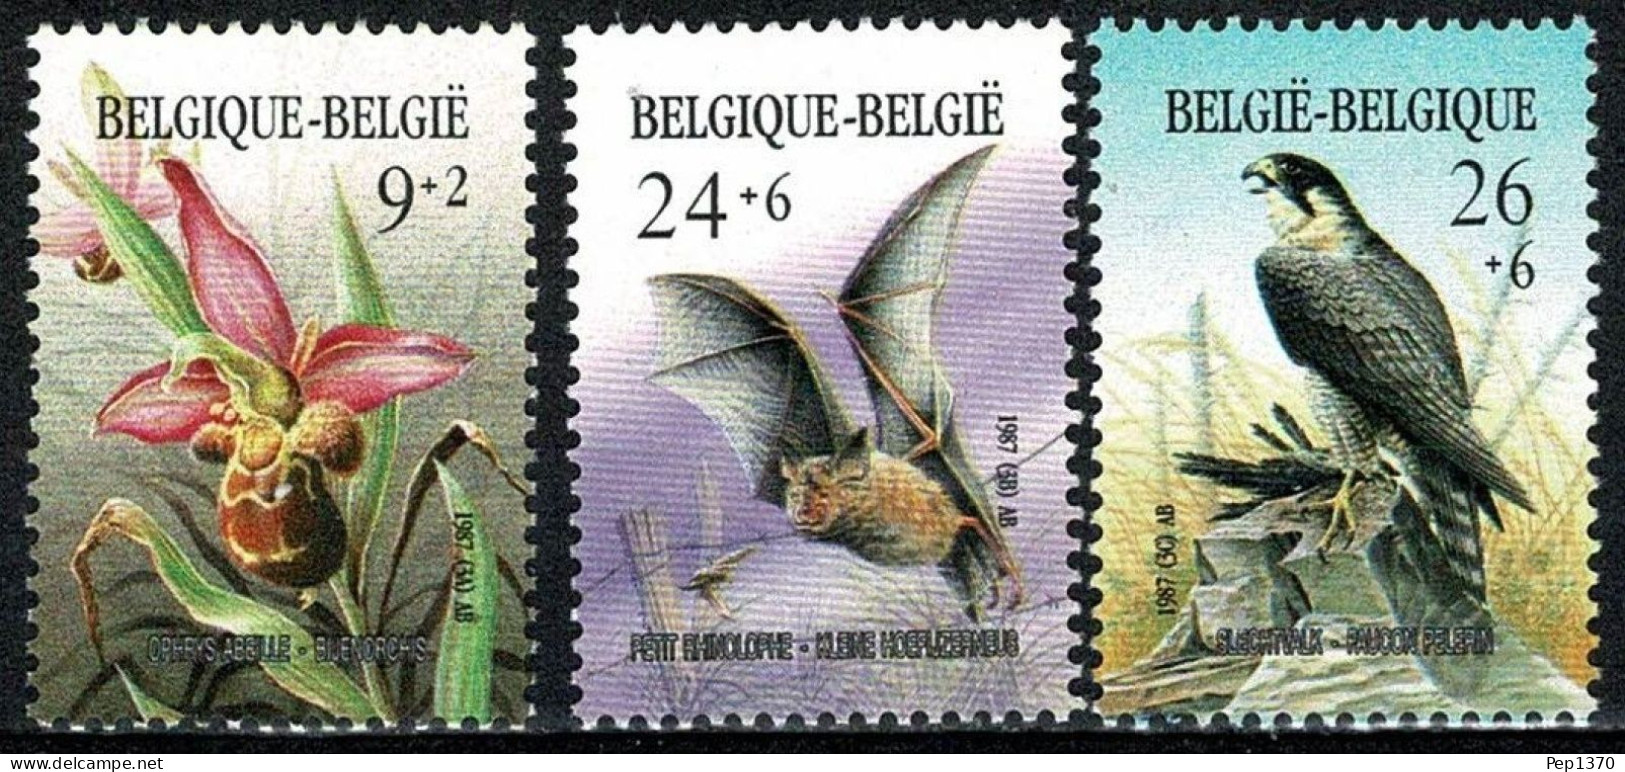 BELGICA 1987 - BELGIQUE - BELGIUM - FLORES Y PAJAROS - YVERT Nº 2244/2246** - Orchideen